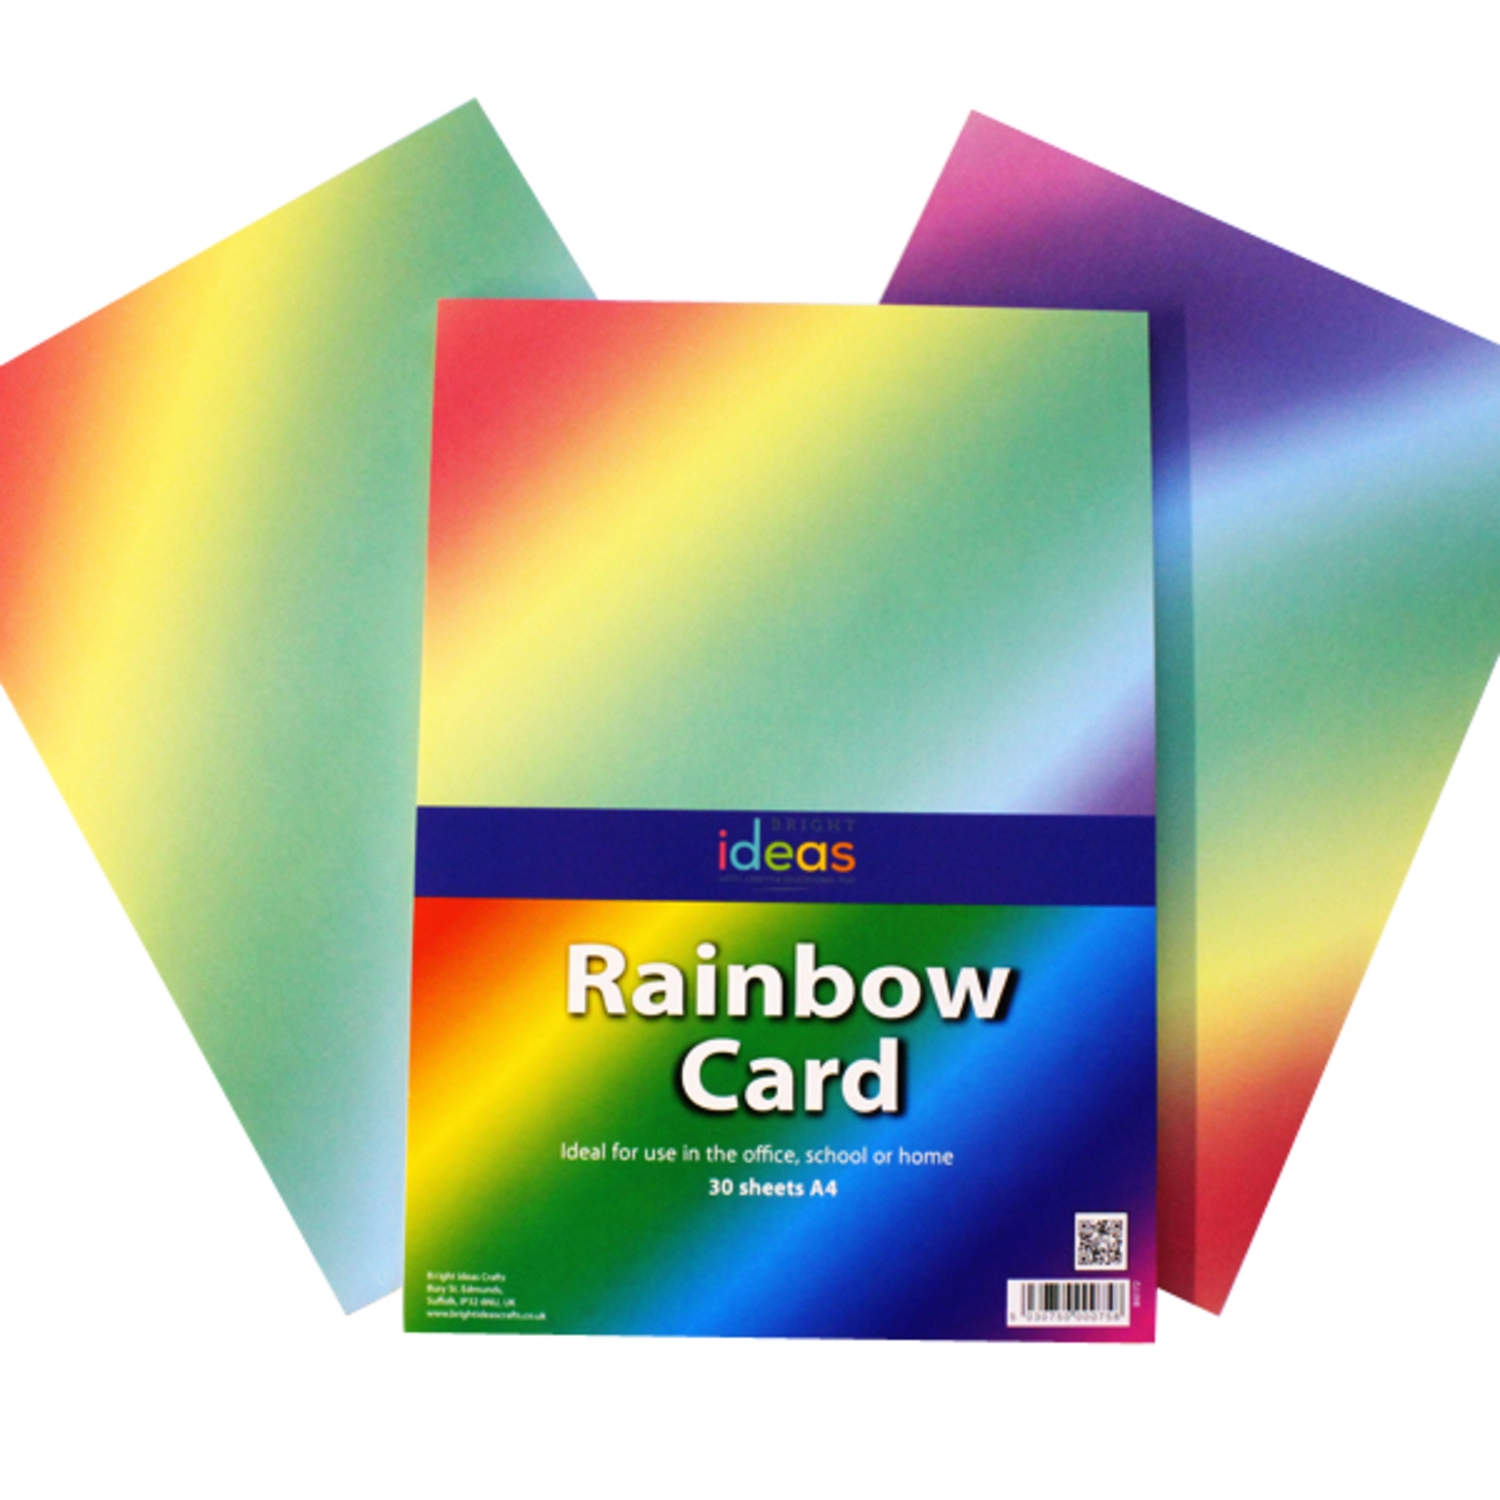 Rainbow Card. Colorful Cards handouts. Rainbow 4 тесты